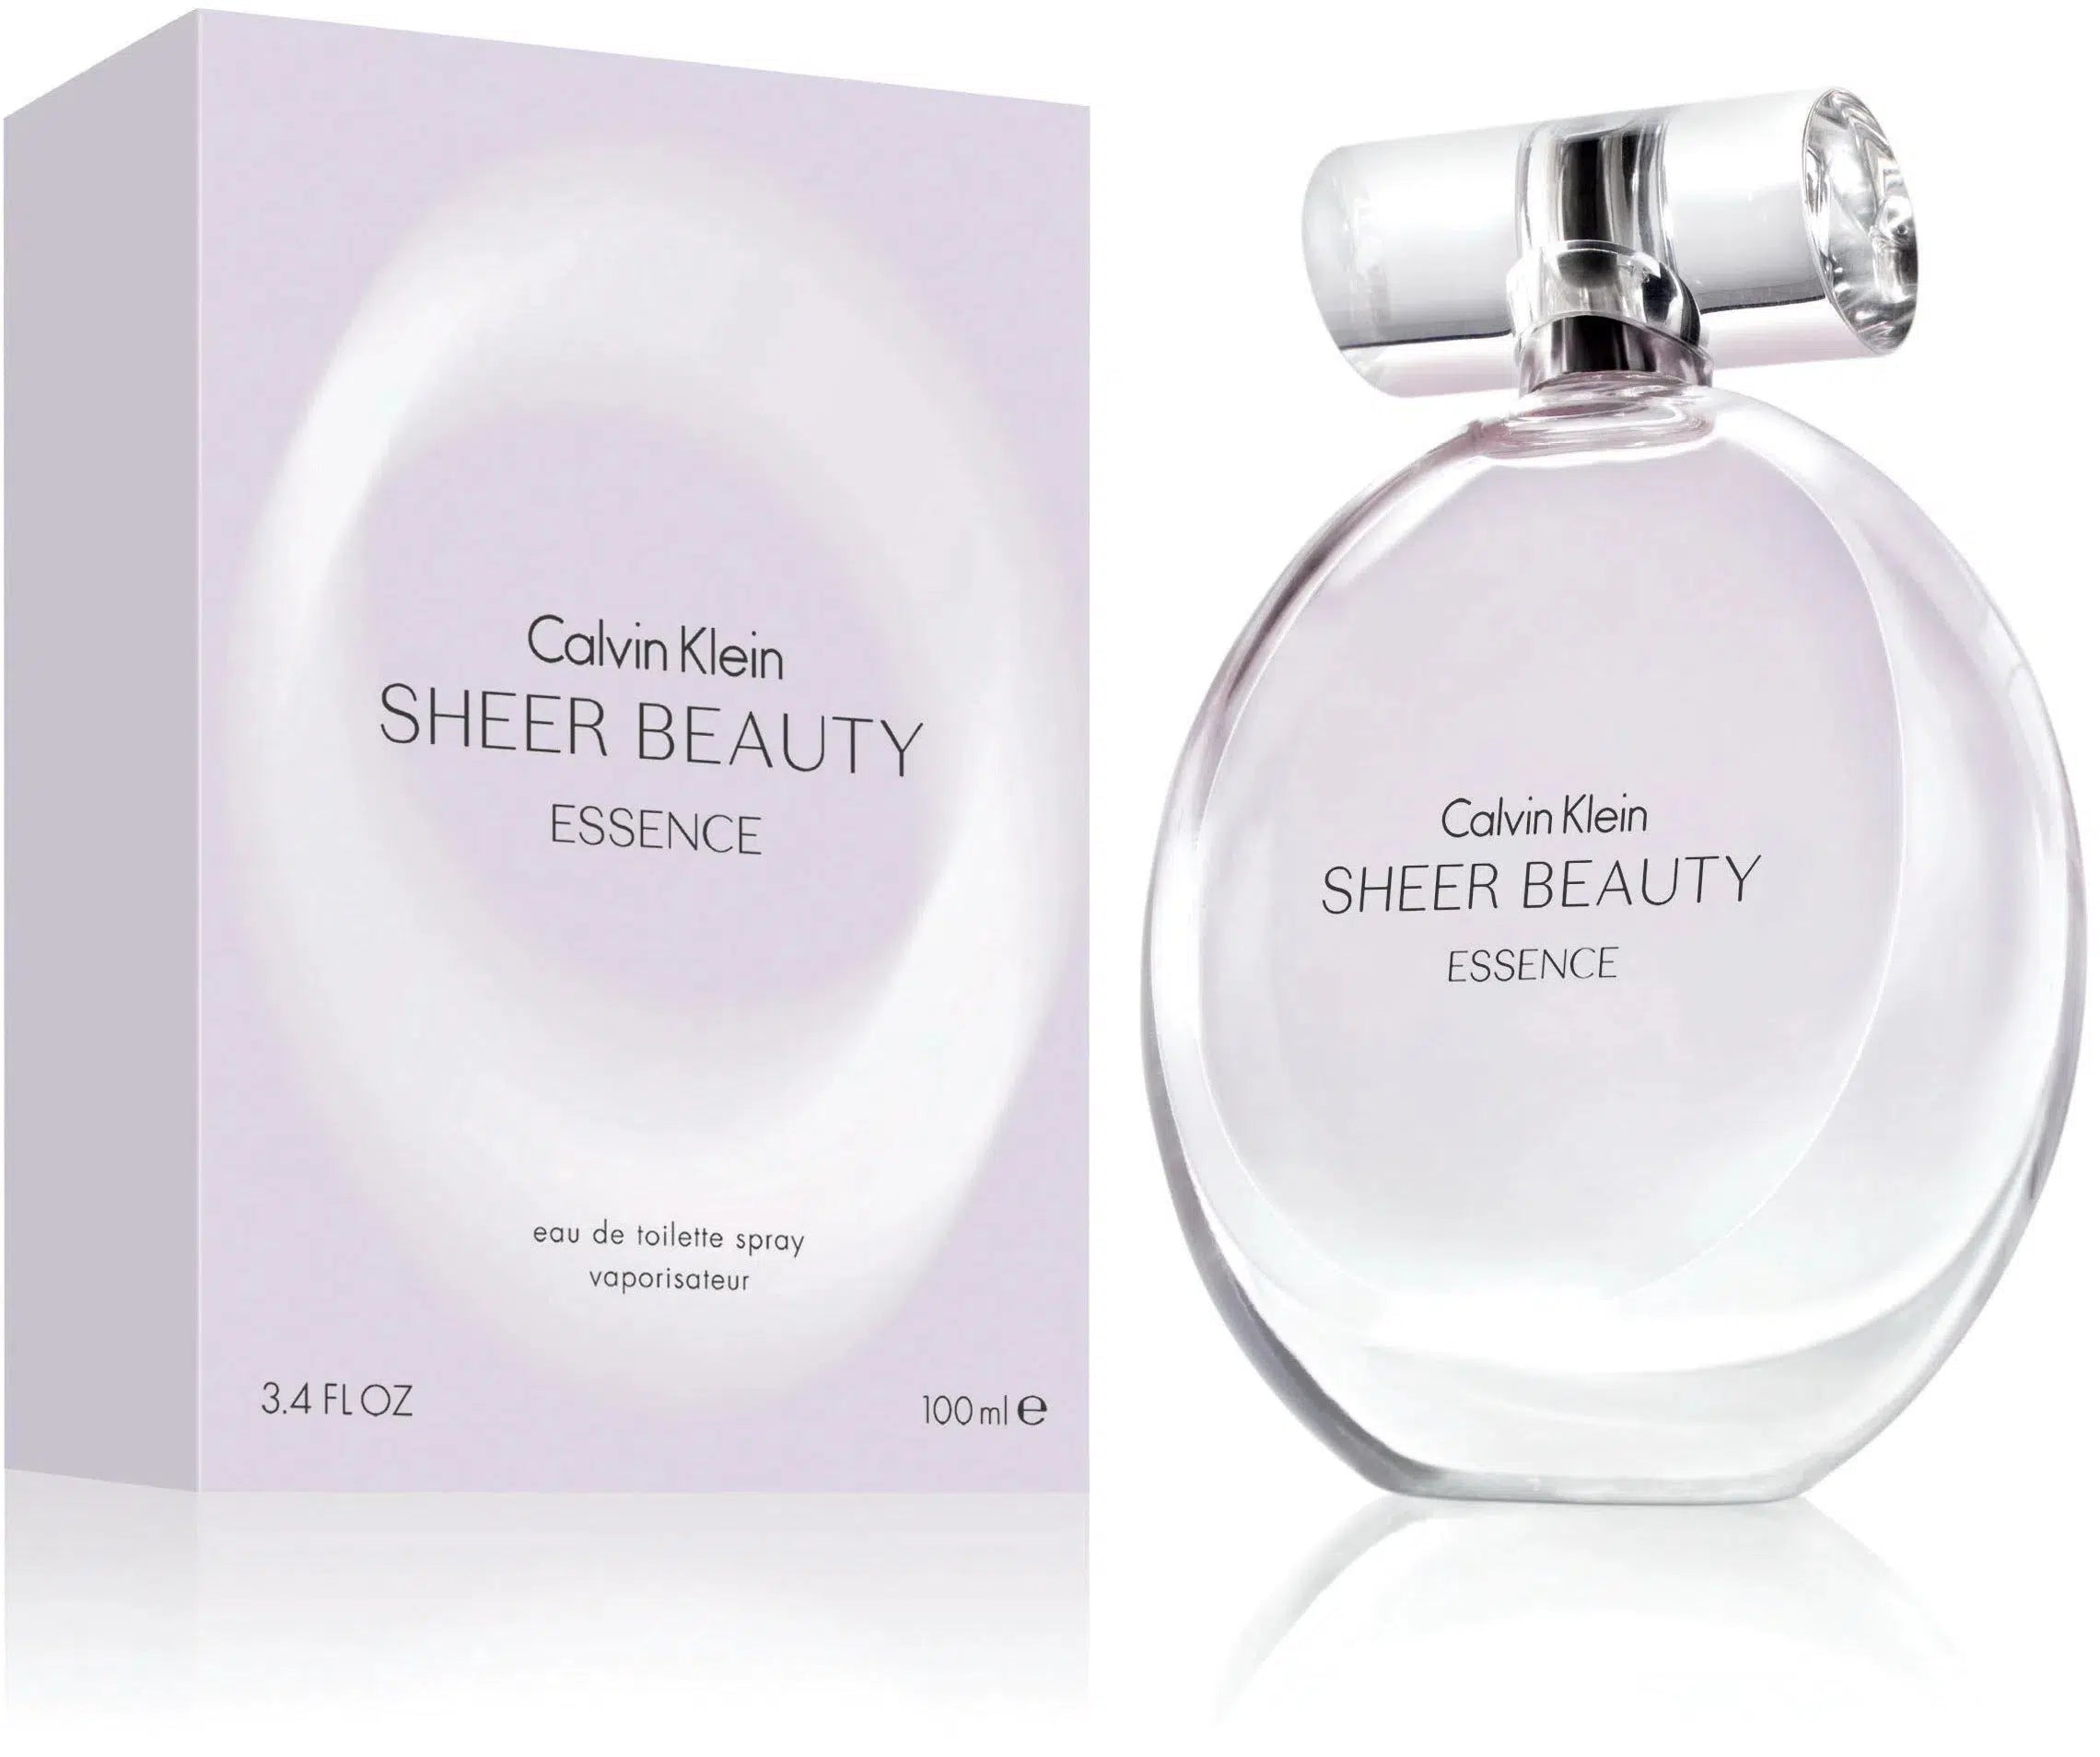 Buy Calvin Klein Sheer Beauty Essence EDT 100ml for P2995.00